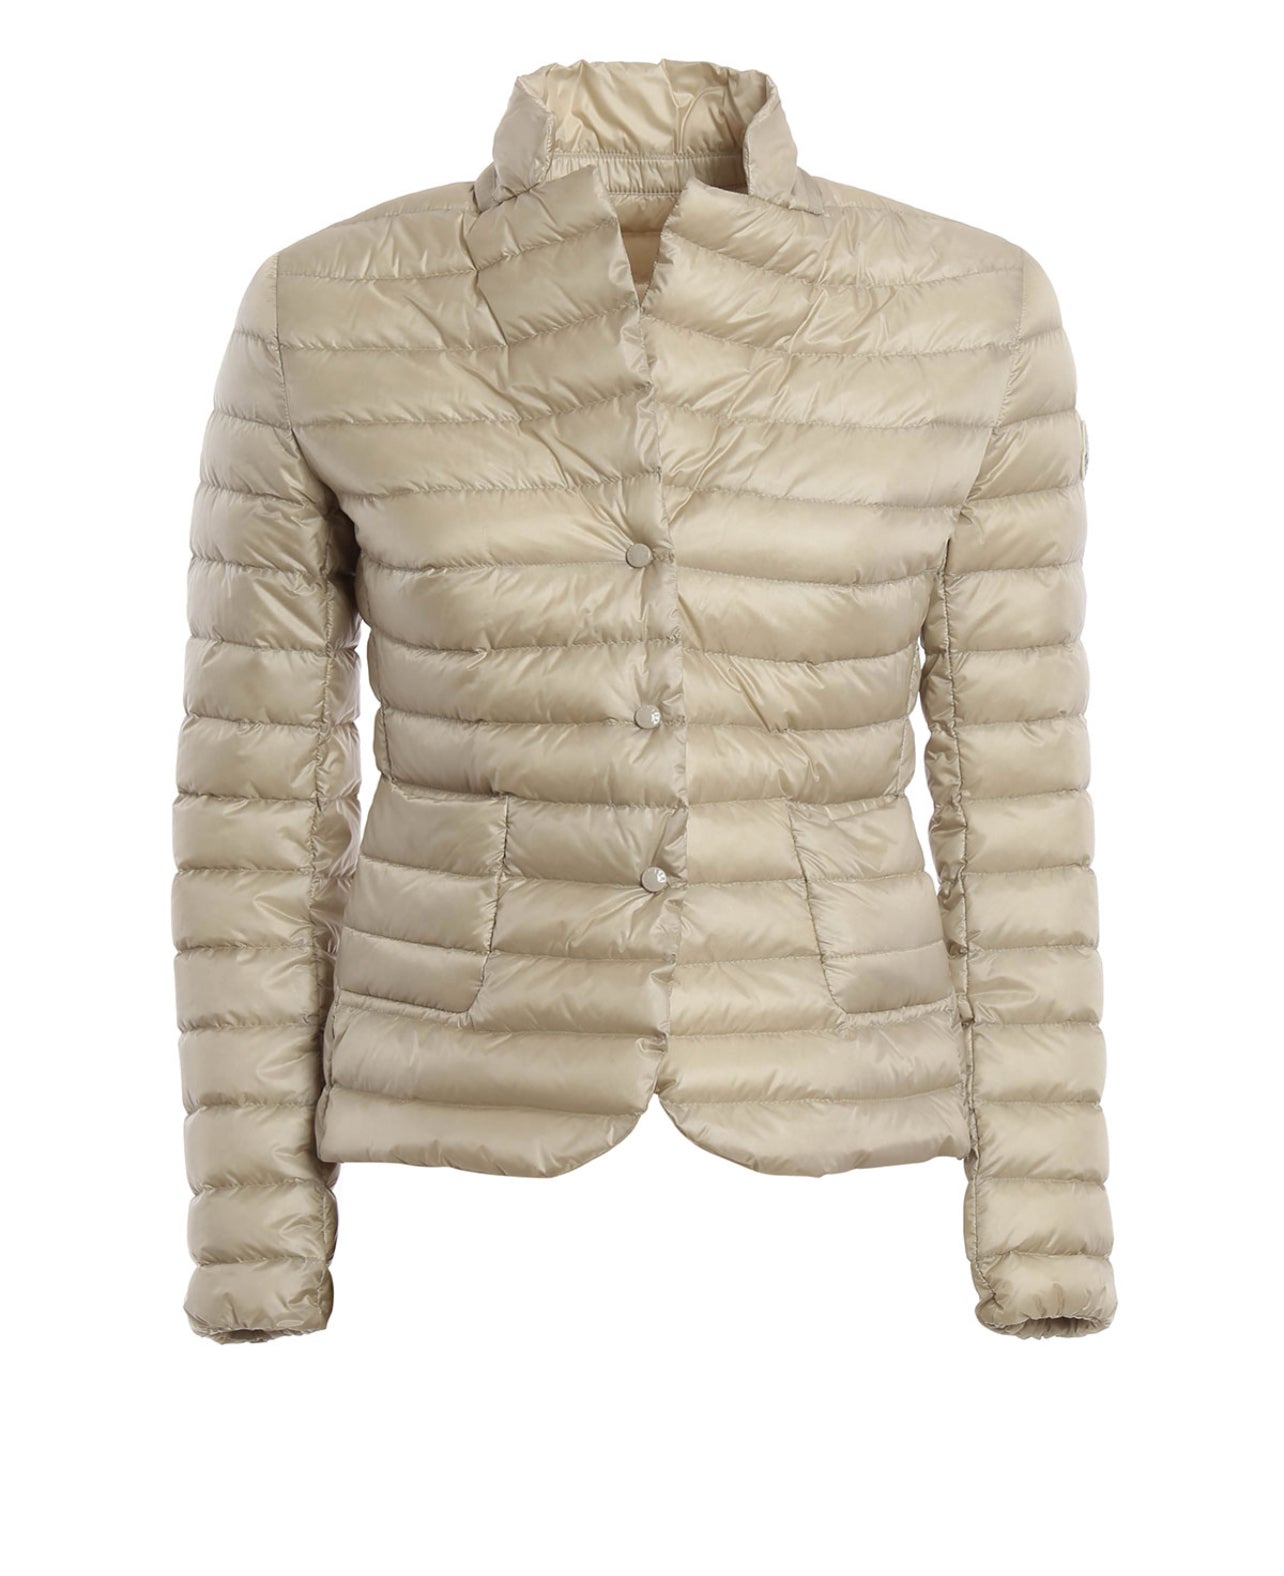 Moncler Leyla Womens Jacket - Size 1